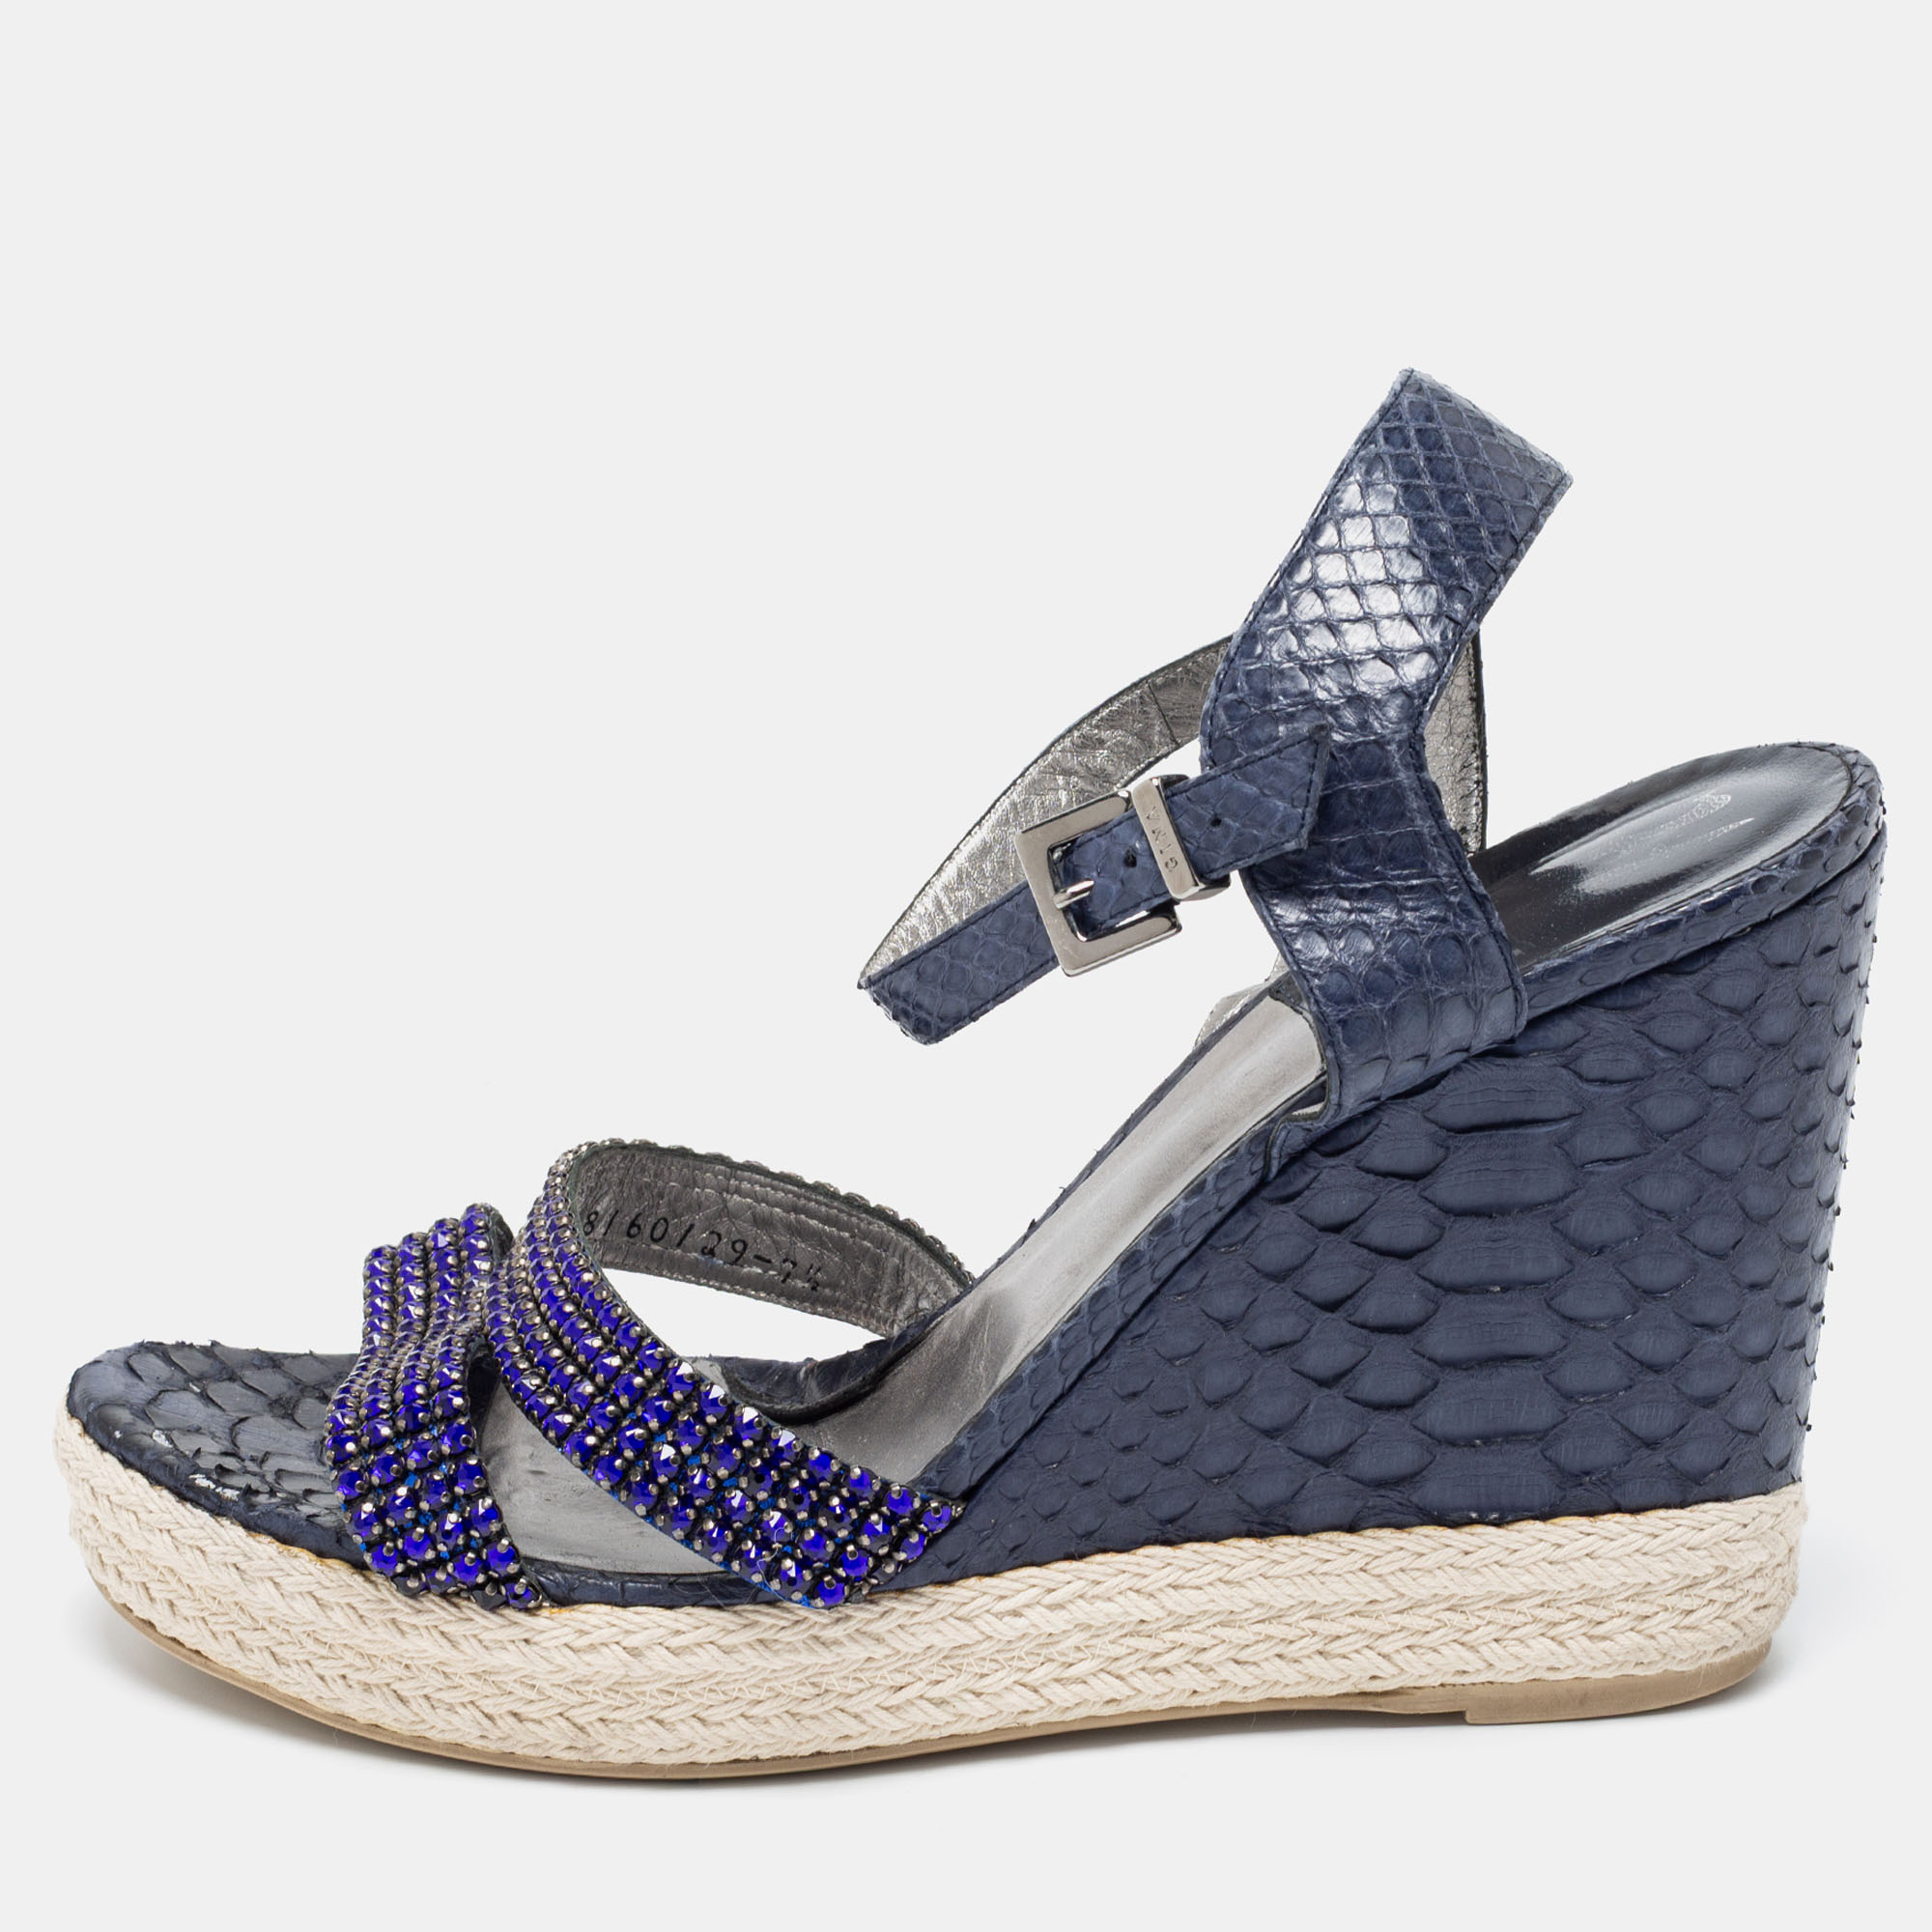 Gina navy blue python leather crystal embellished wedge platform ankle-strap sandals size 40.5